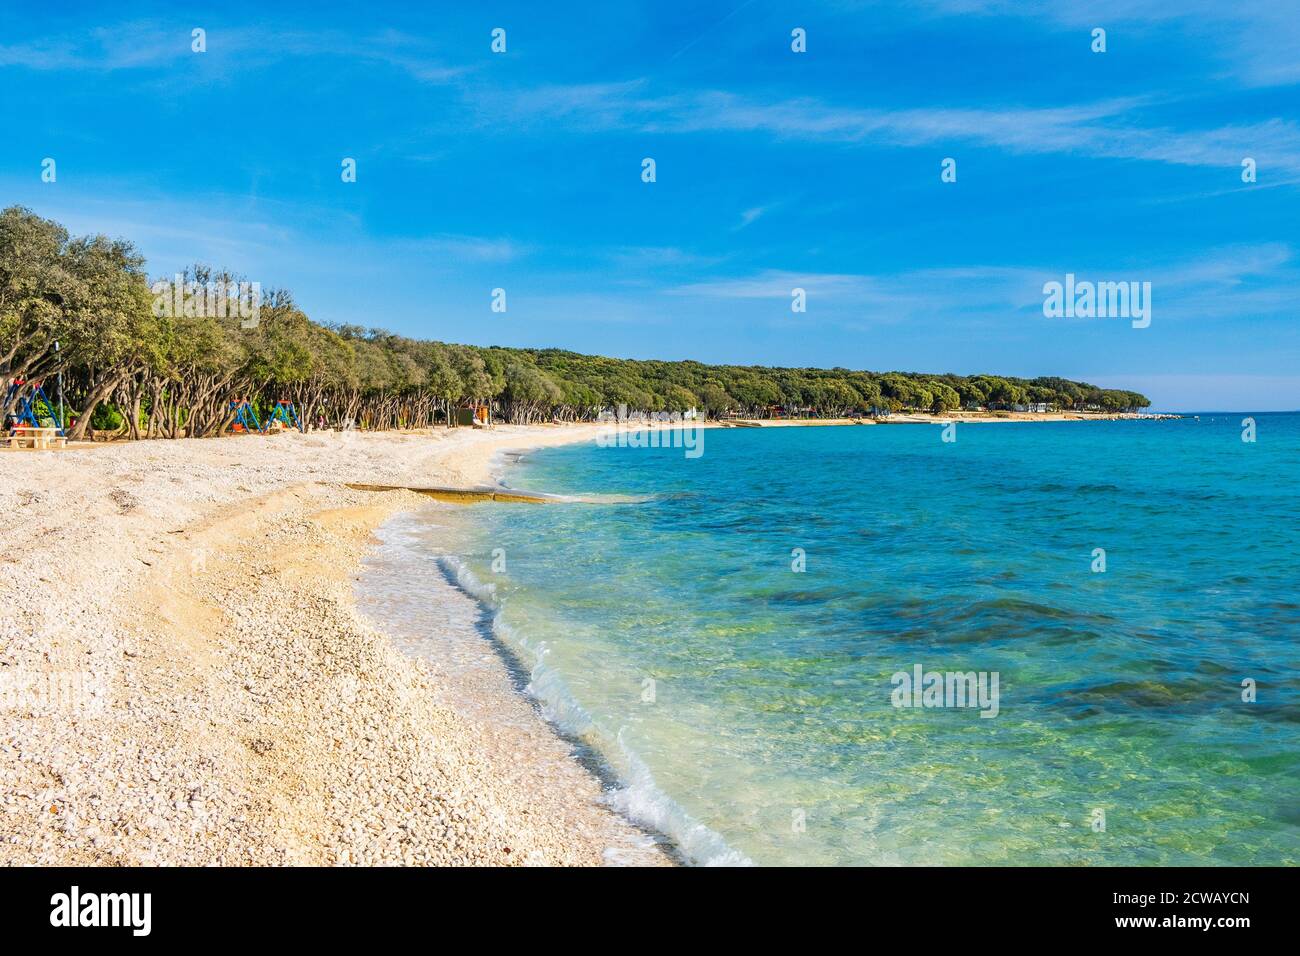 Longue plage l'île de Pag en Croatie, paysage marin Adriatique Banque D'Images